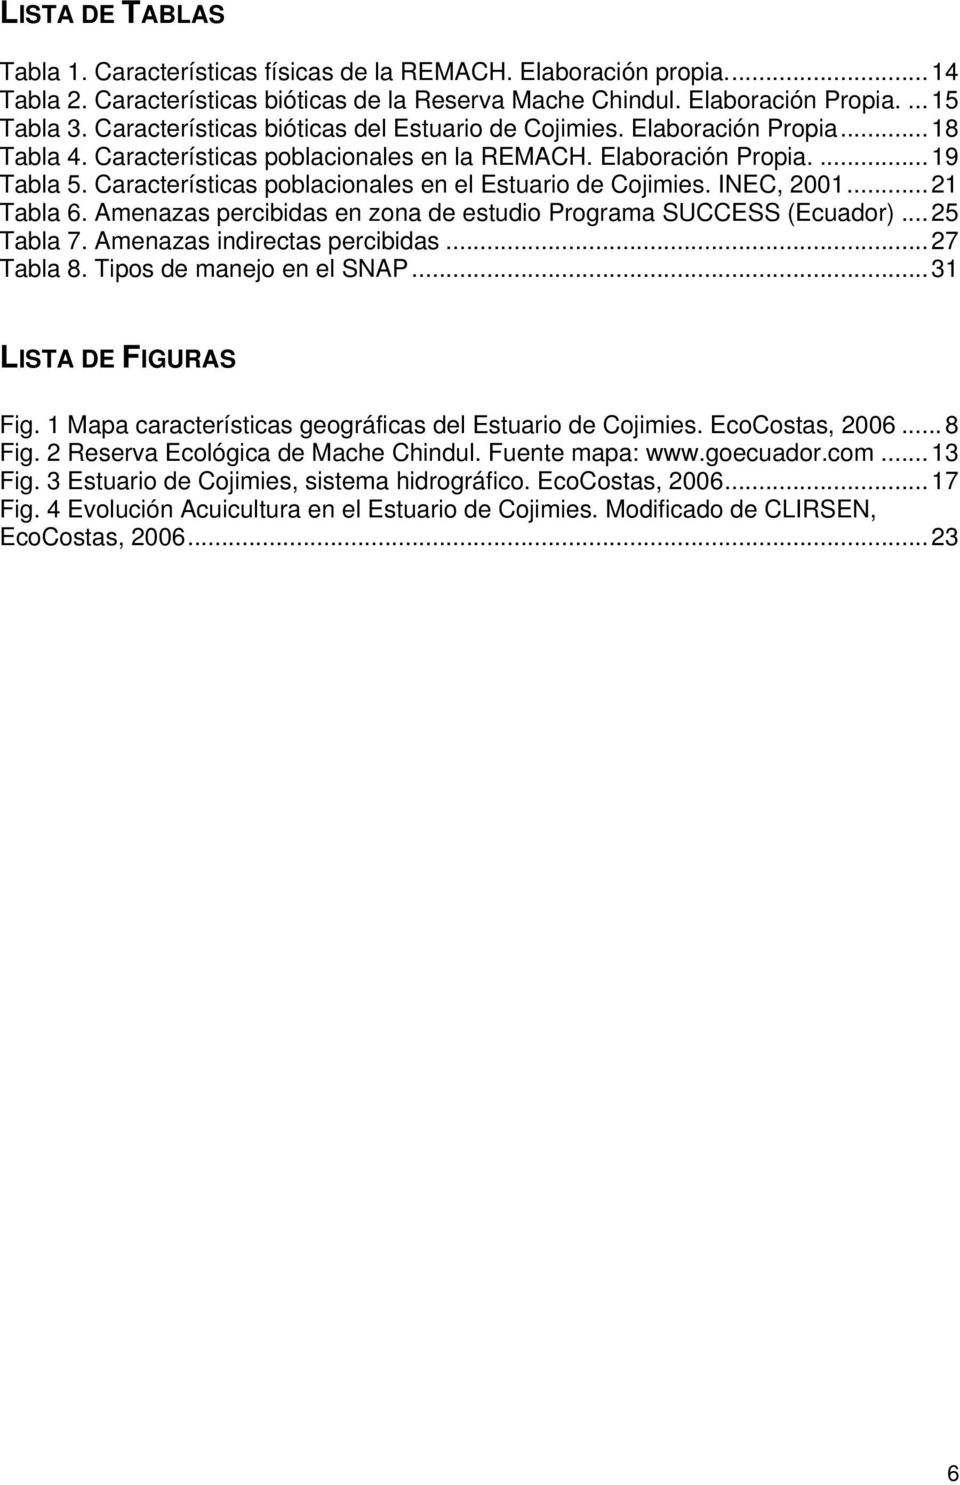 Características poblacionales en el Estuario de Cojimies. INEC, 2001...21 Tabla 6. Amenazas percibidas en zona de estudio Programa SUCCESS (Ecuador)...25 Tabla 7. Amenazas indirectas percibidas.